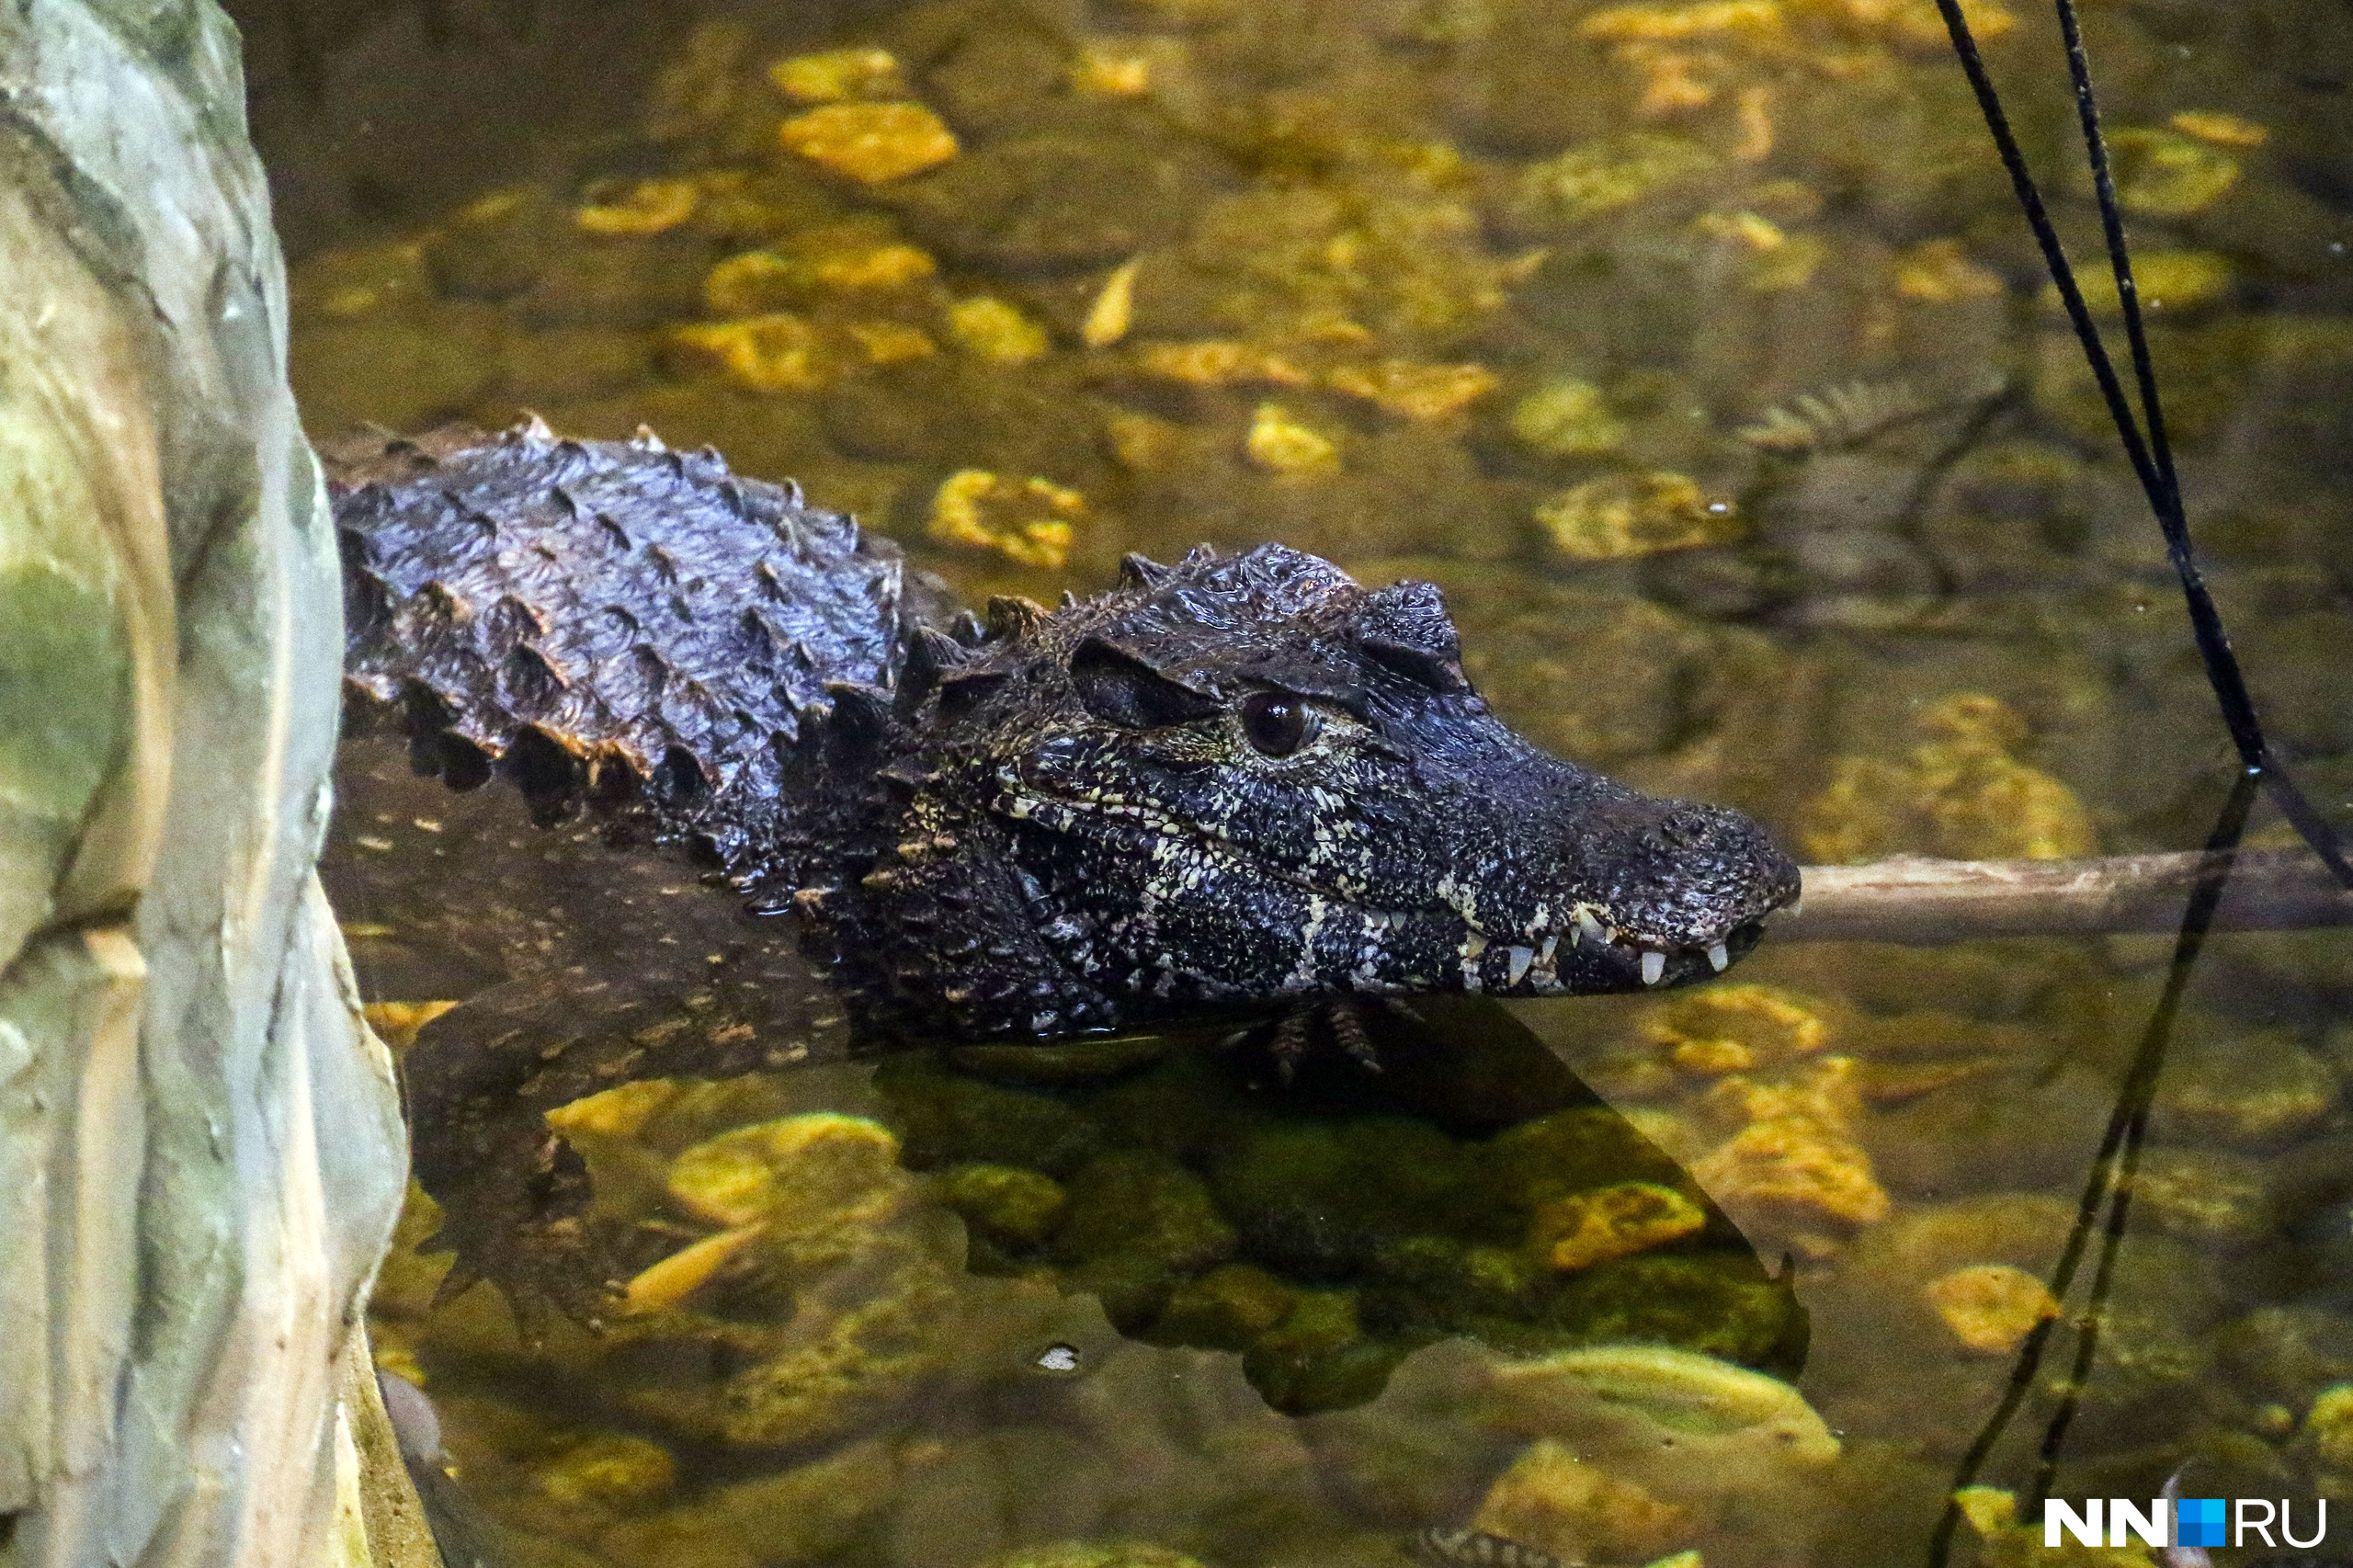 Гладколобые кайманы — небольшие крокодилы, которые достигают в длину до <nobr class="_">1,5 метра</nobr>, становясь взрослыми